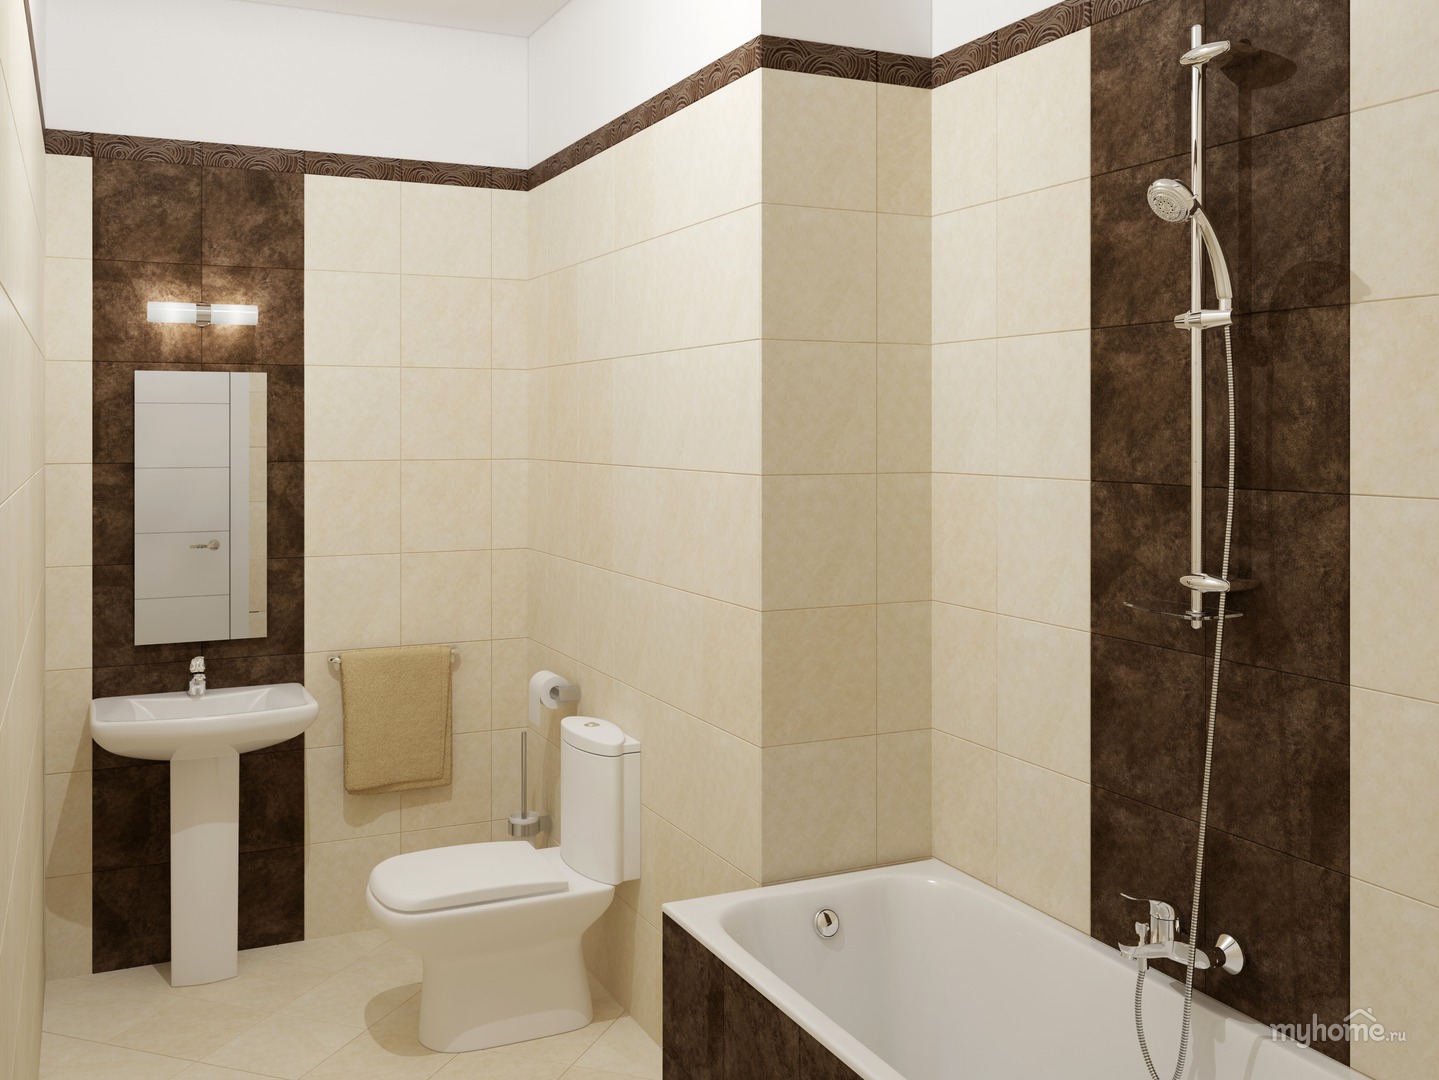 Ванная комната плитка бежево коричневая